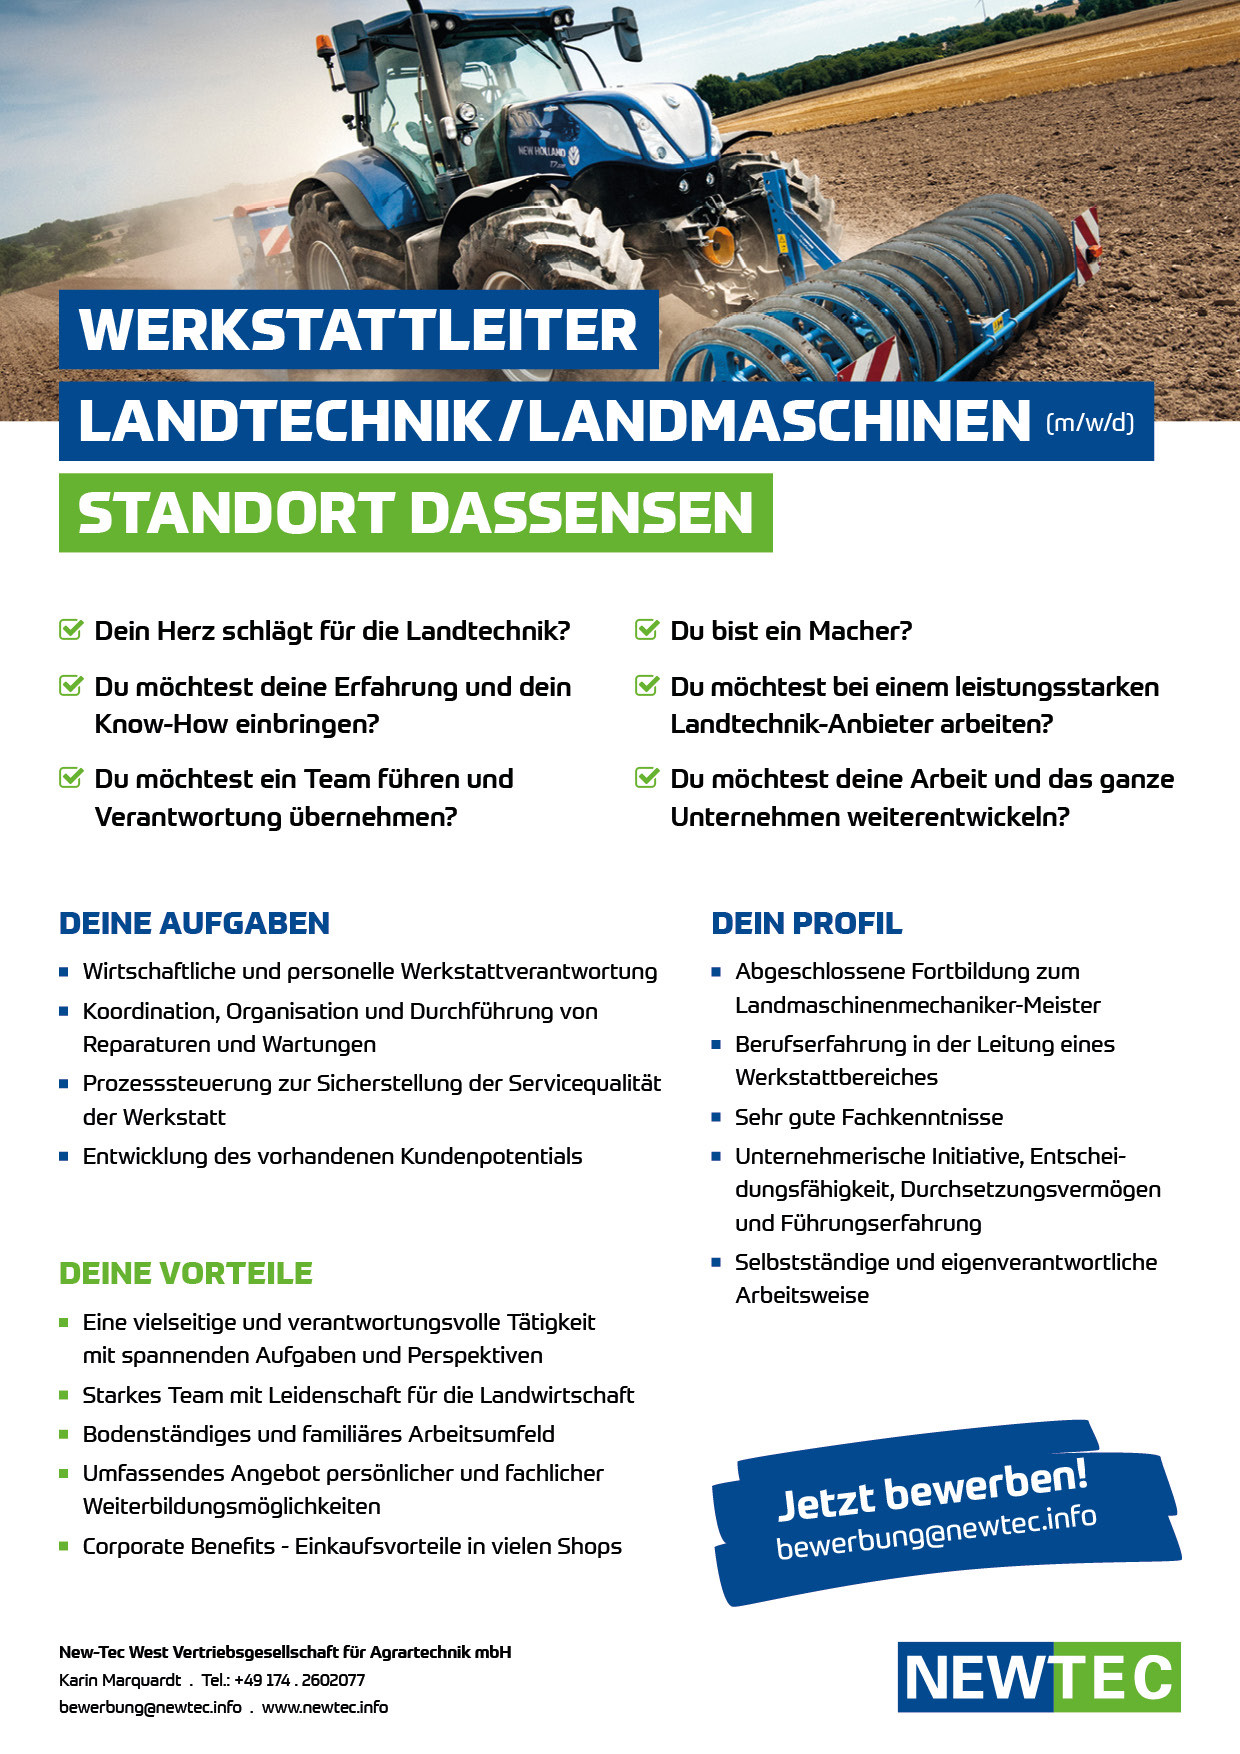 NEWTEC_Stellenanzeige_Werkstattleiter_Landtechnik_Landmaschinen_Dassensen